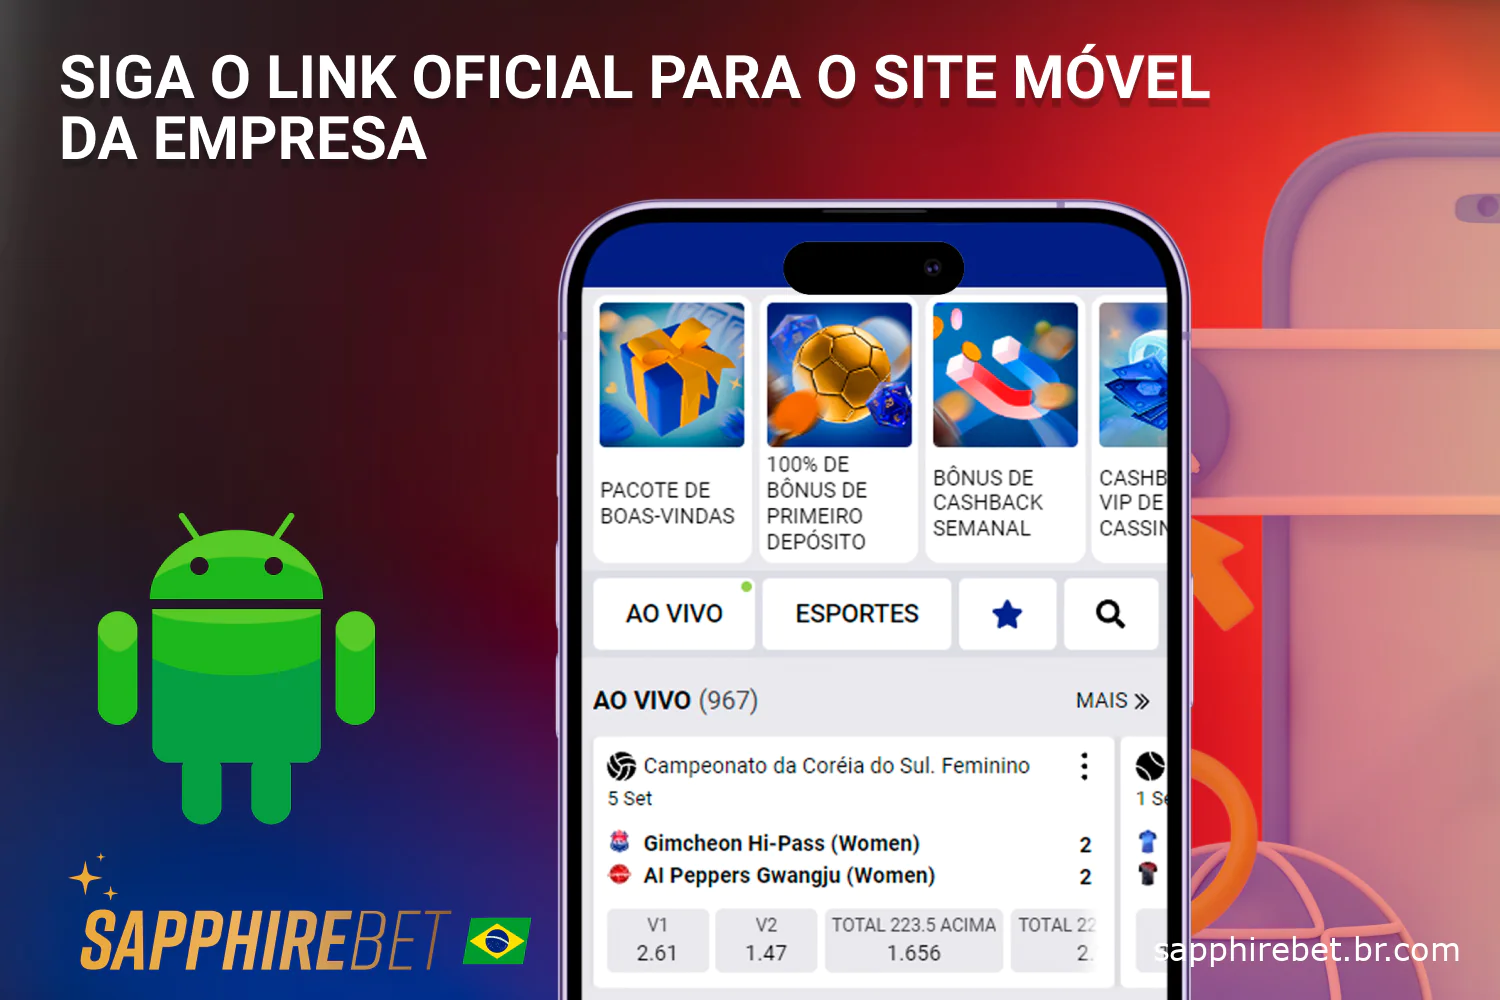 Para começar a apostar, os usuários do Brasil devem visitar o site oficial da Sapphirebet